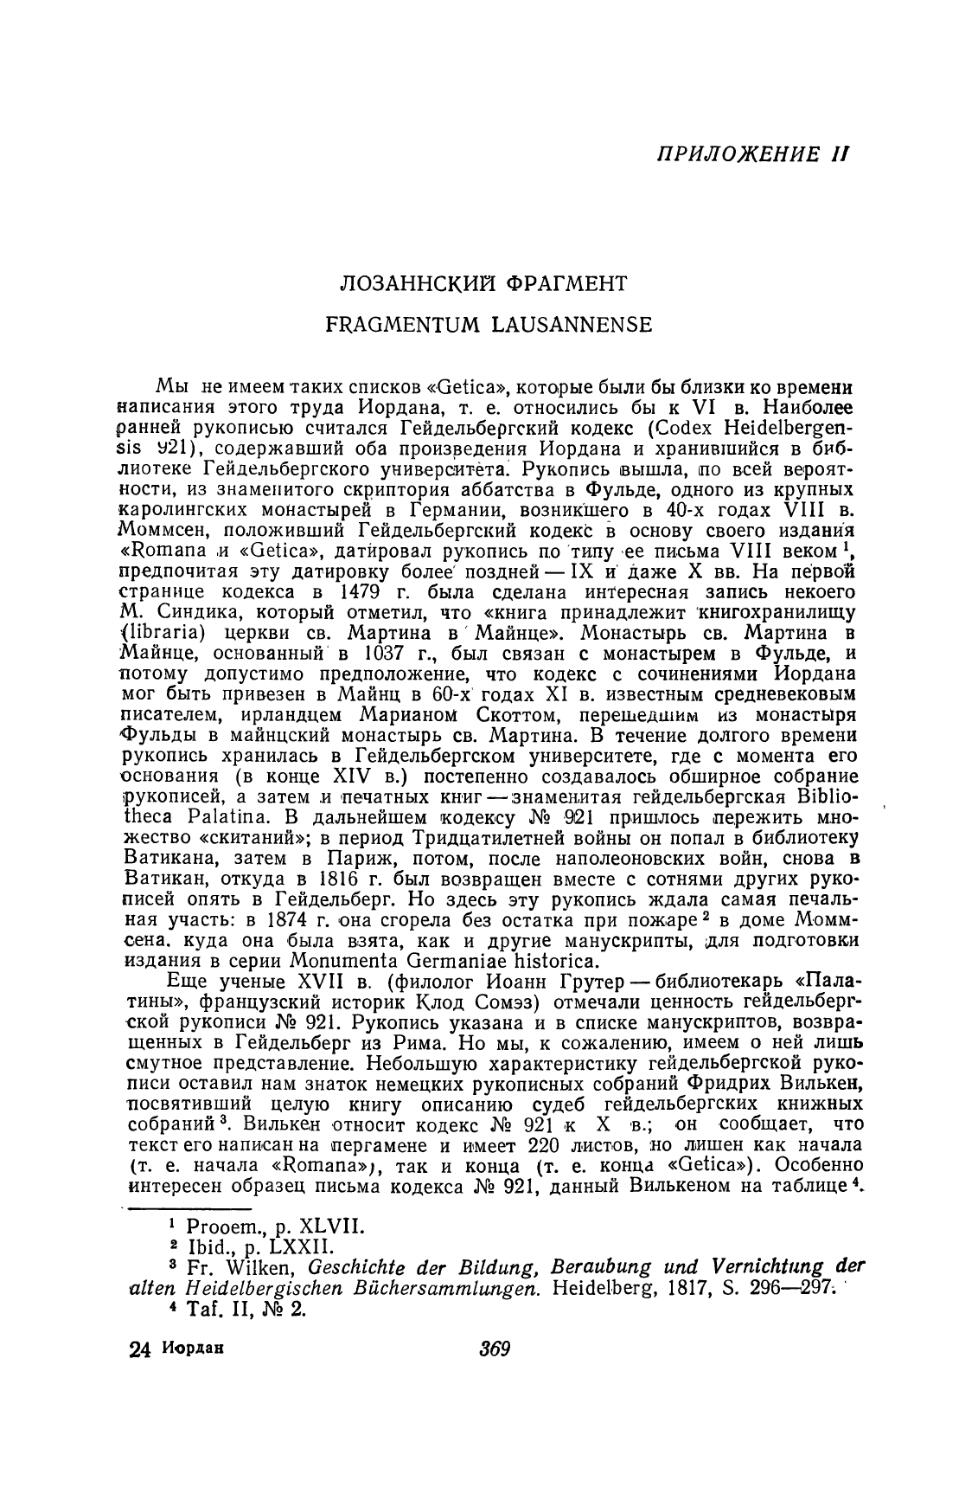 Приложение II. Лозаннский фрагмент. Fragmentum Lausannense